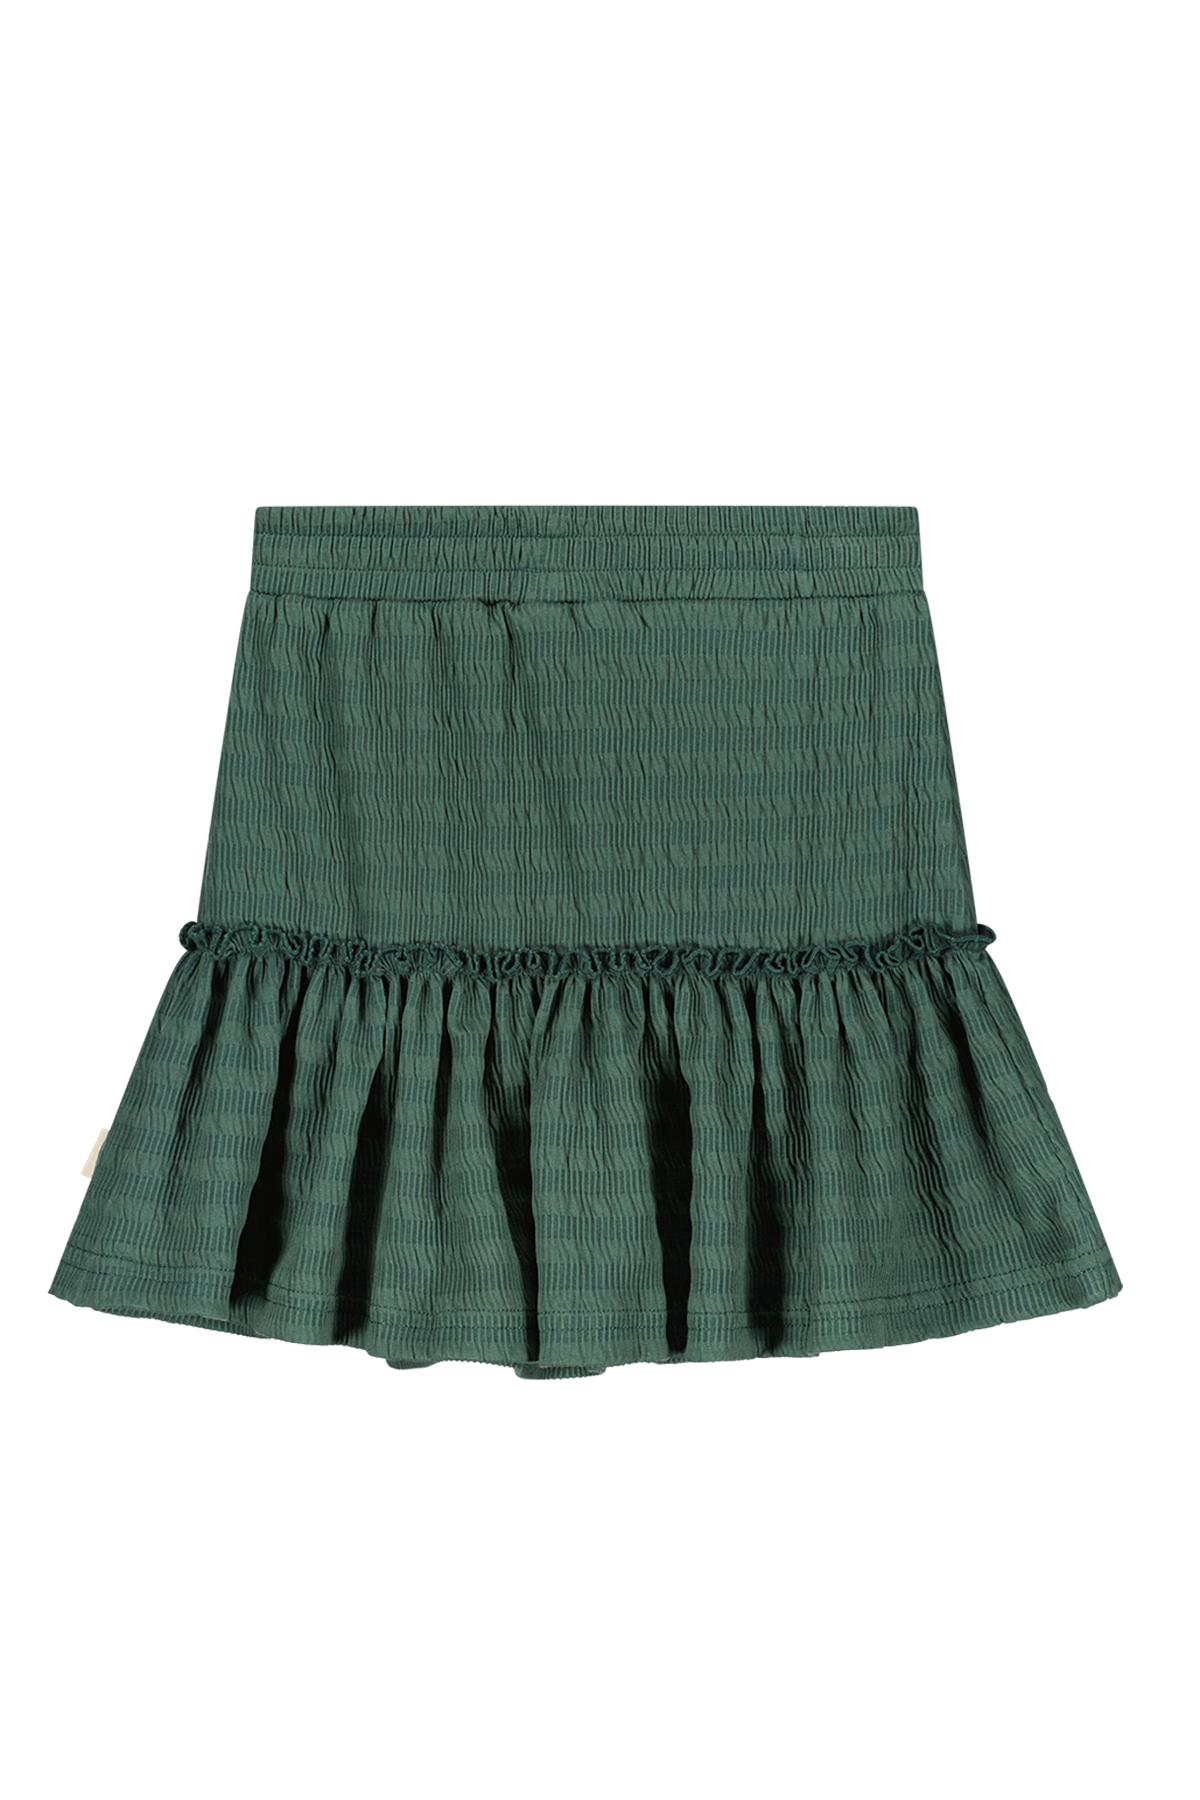 Girly structered skirt